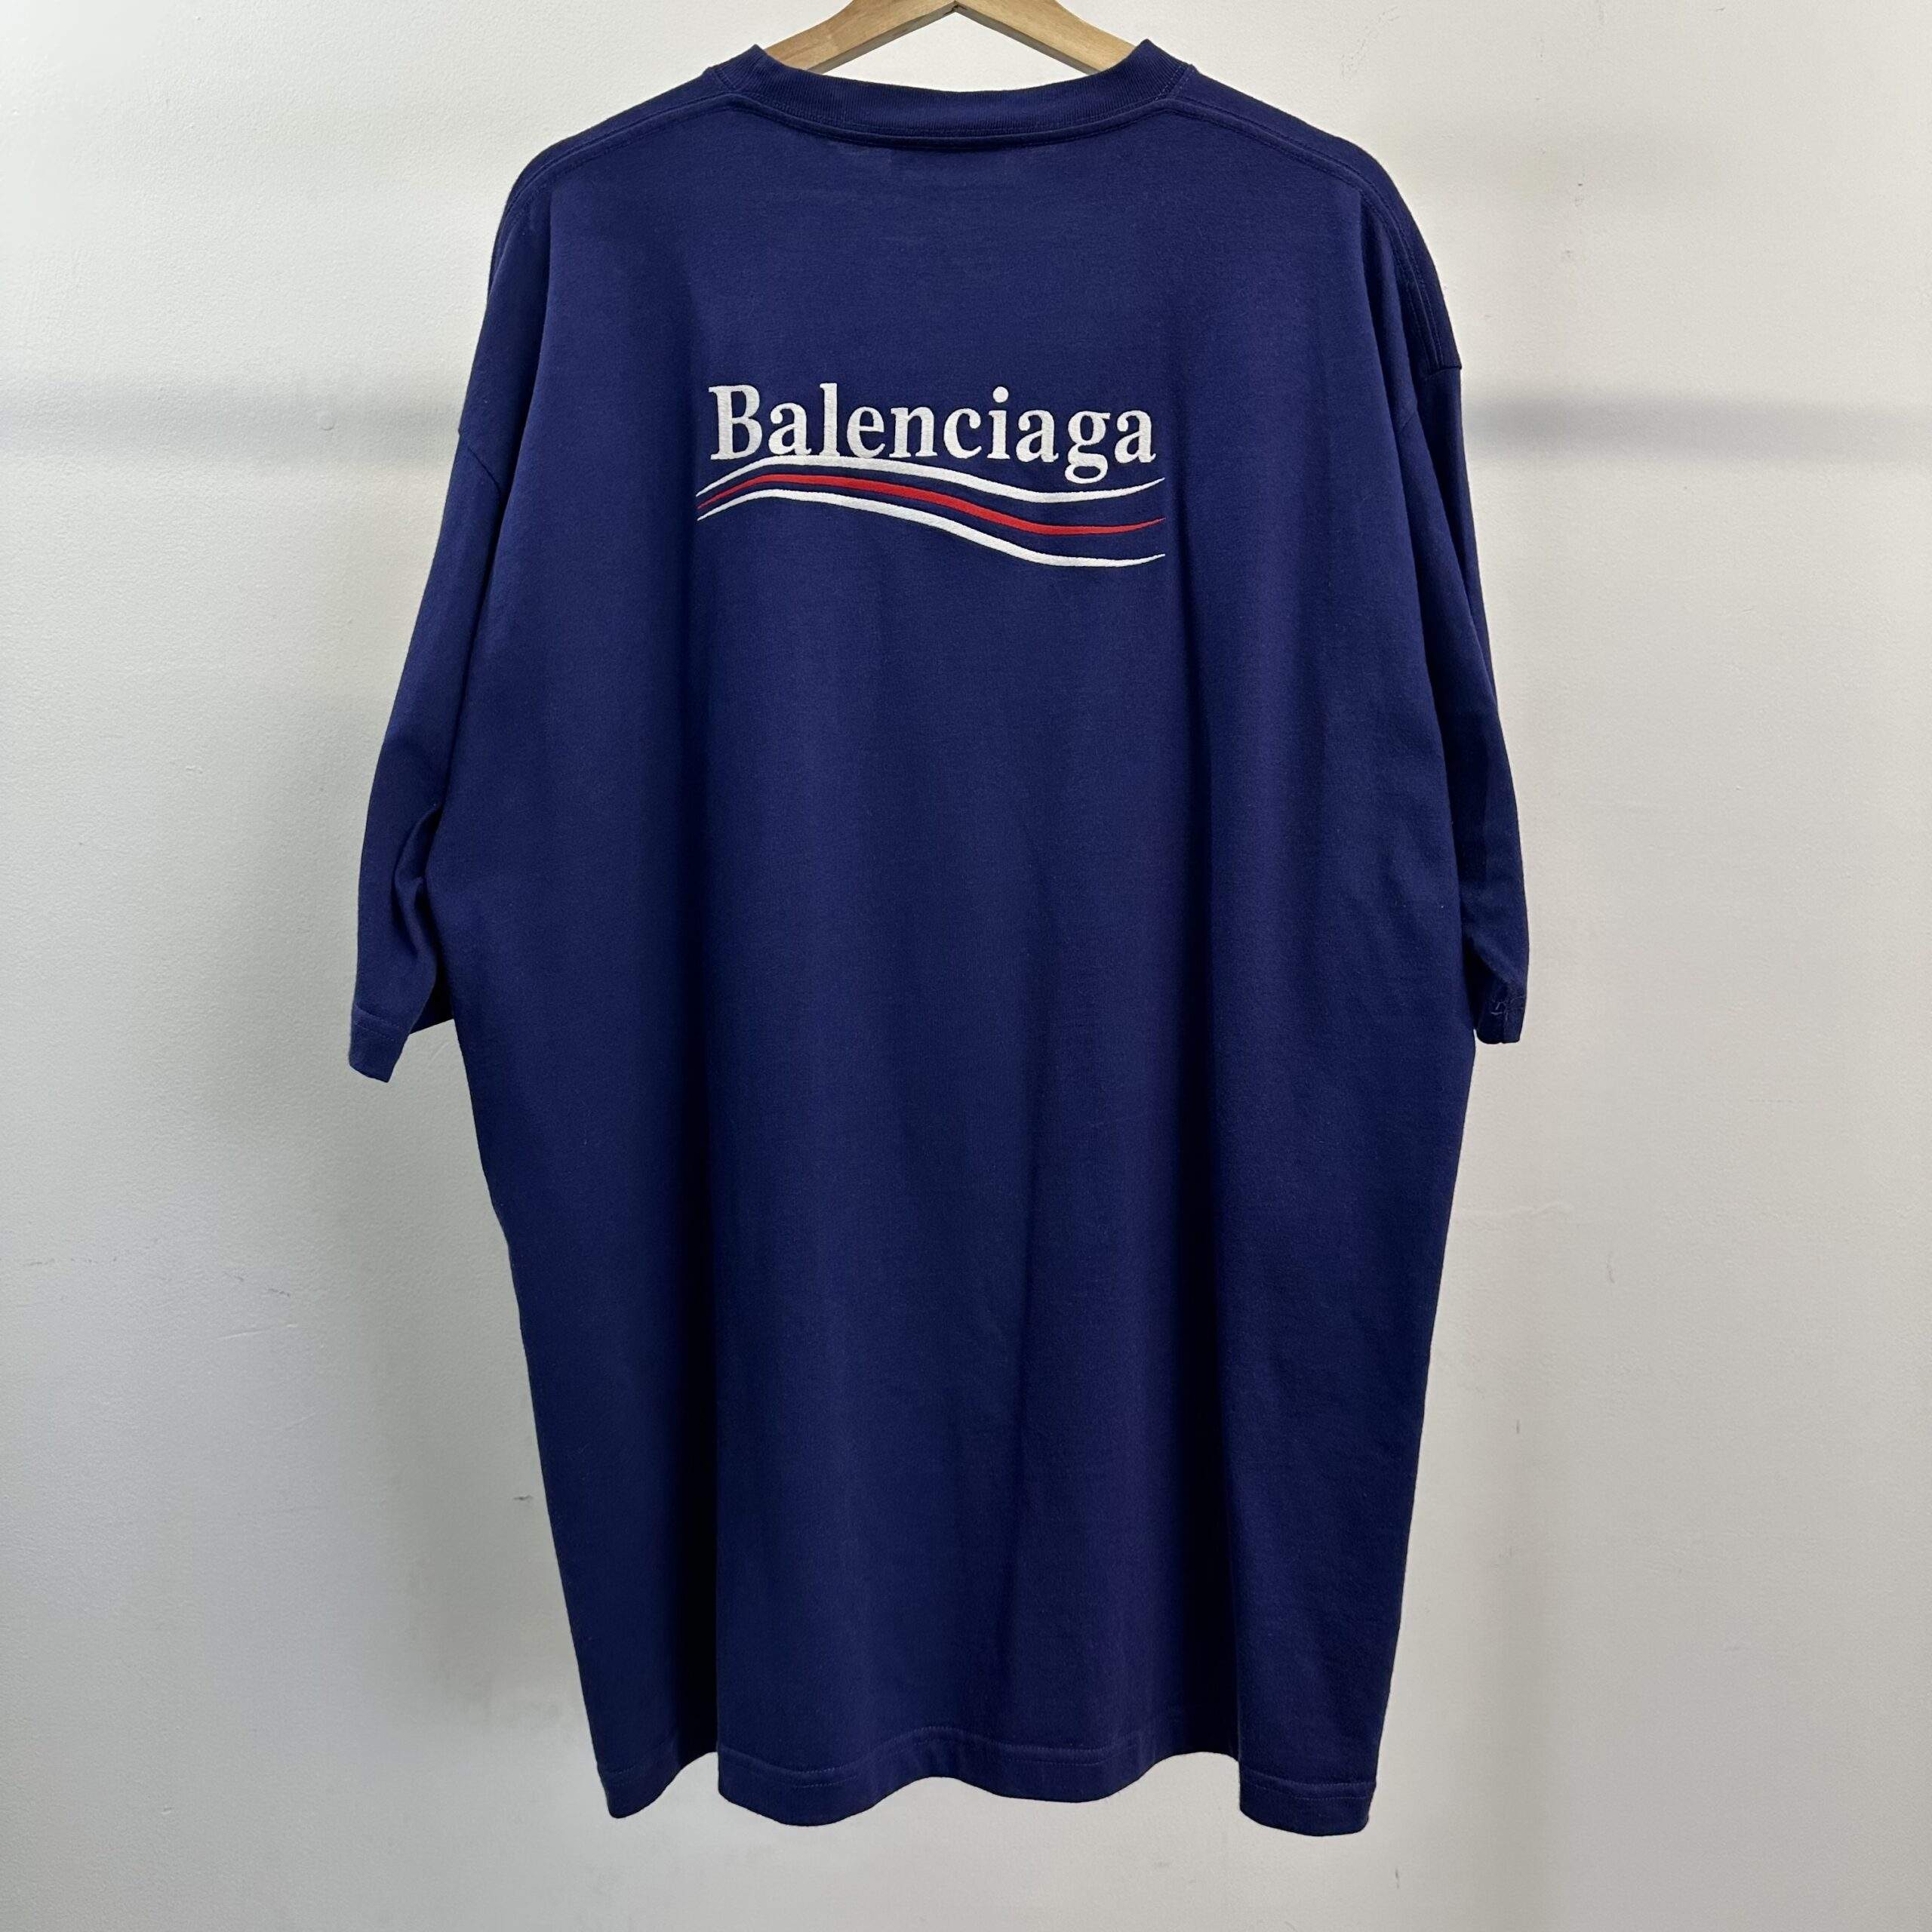 Balenciaga Campaign Logo T-Shirt - Veblen